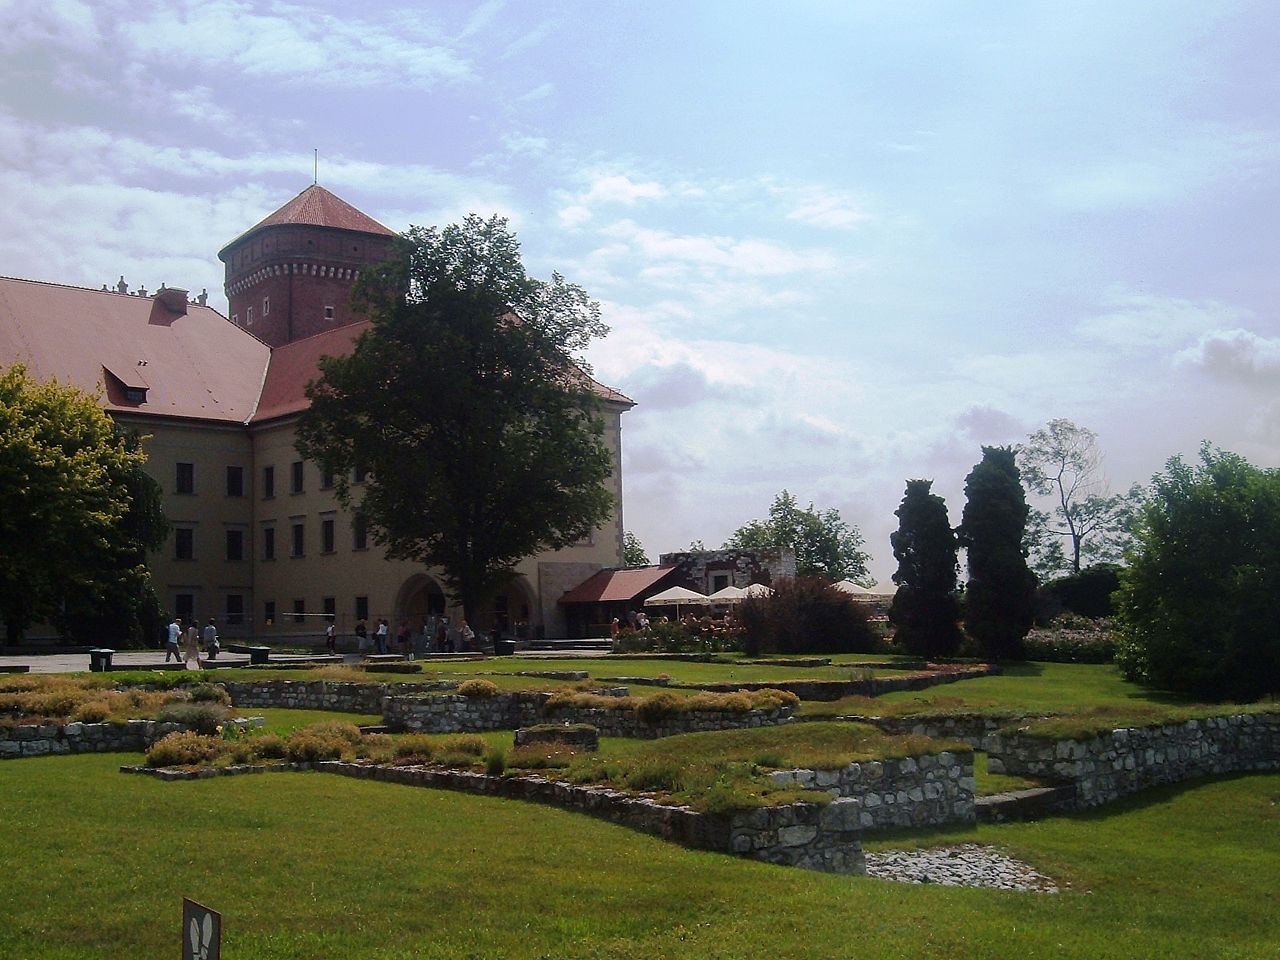 Resti del Forte e Castello di Wawel a Cracovia (krakow) in Polonia